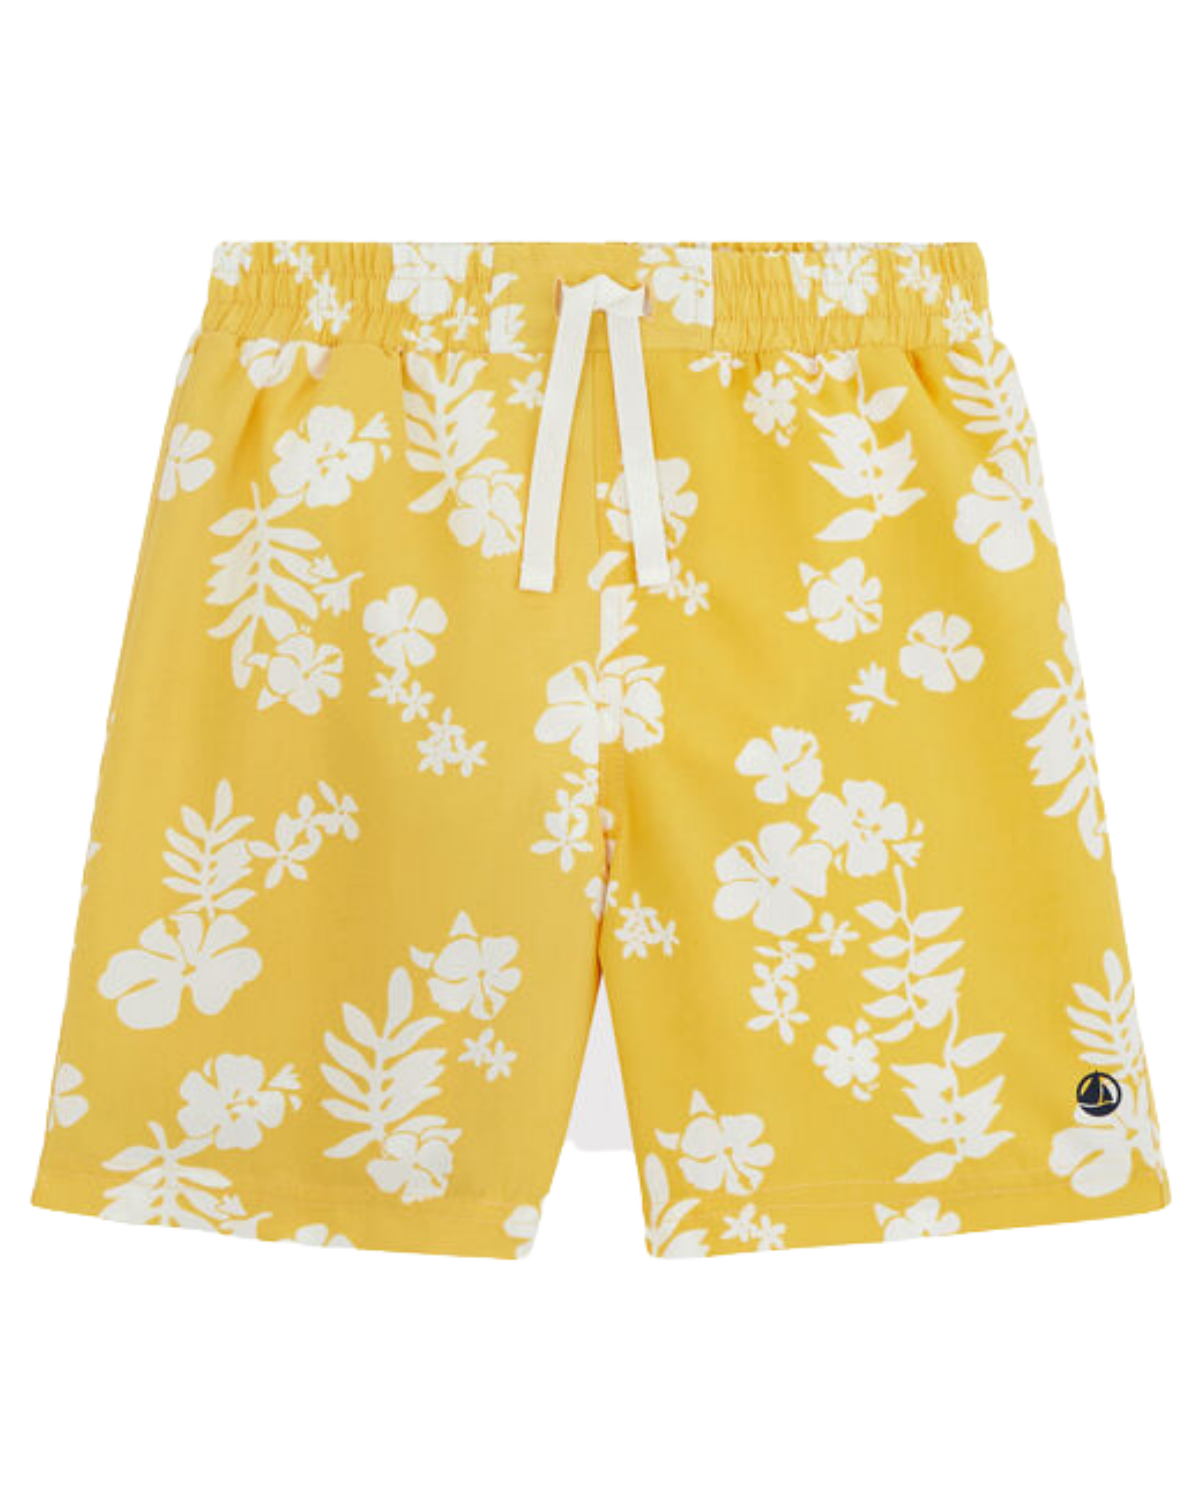 Children’s Hawaiian Print Swim Shorts in Yellow + White